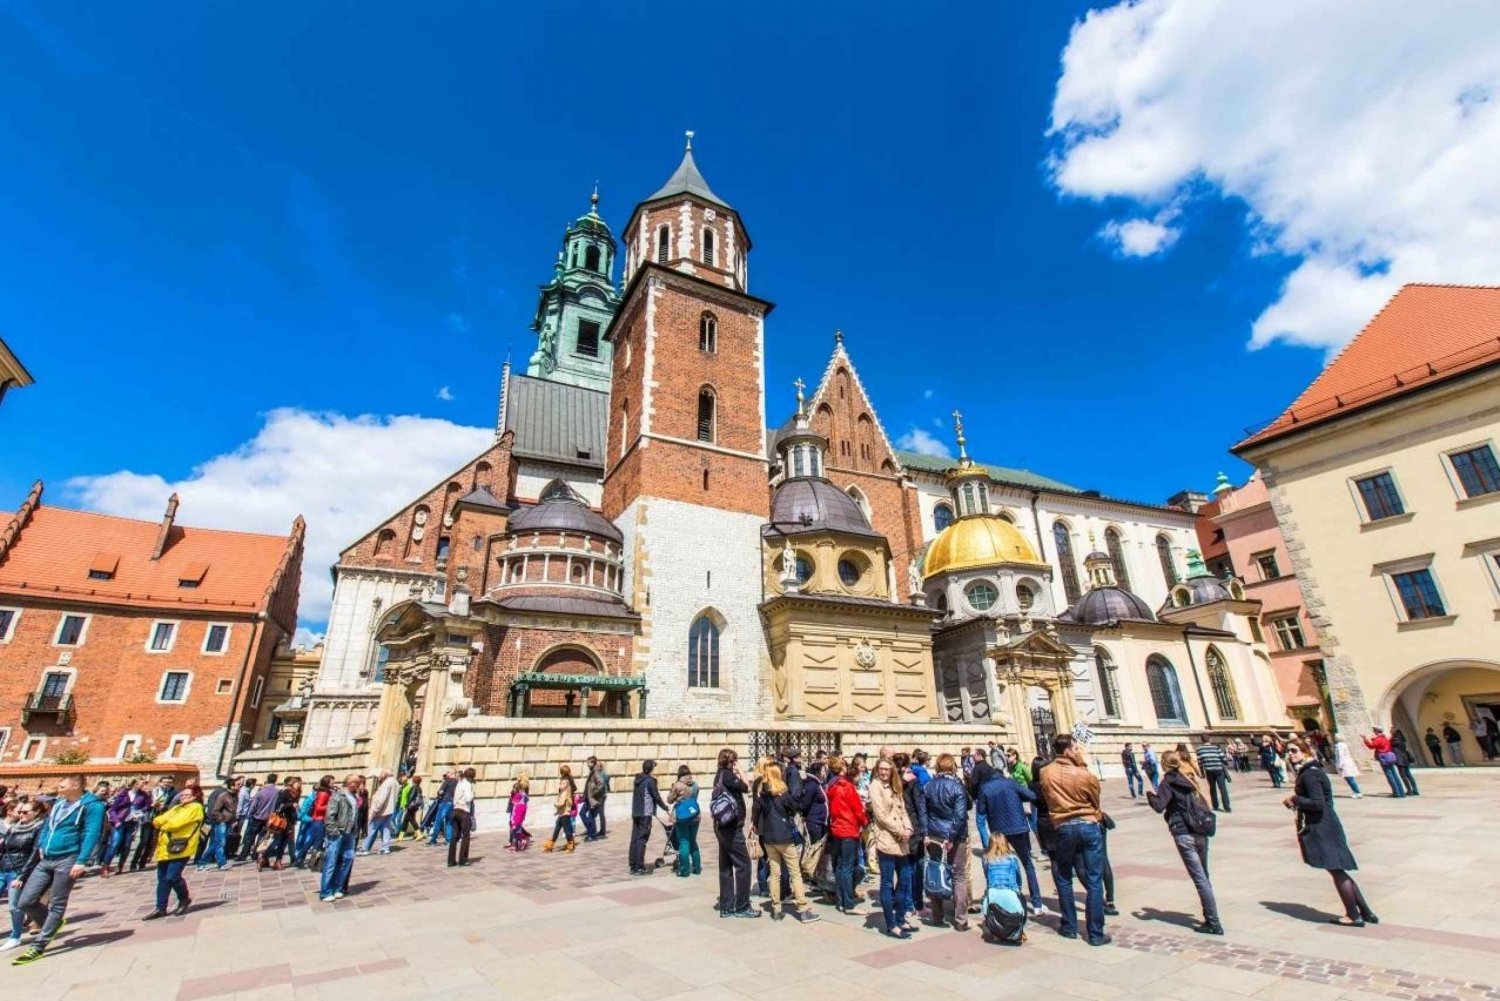 Cracovie : Cathédrale royale, église de Marie et métro Rynek